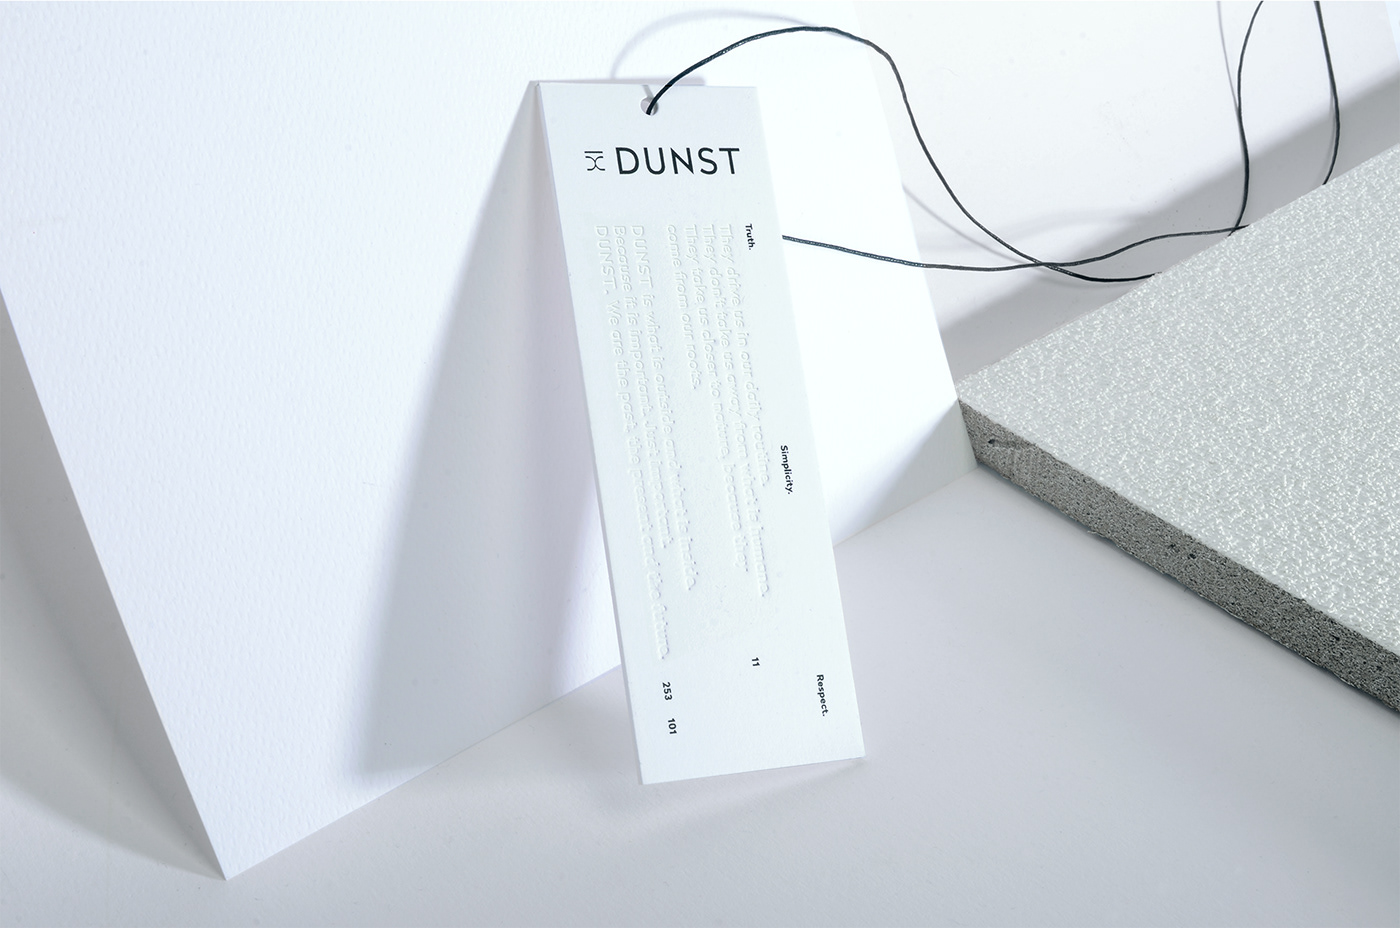 Business card design idea #259: Dunst